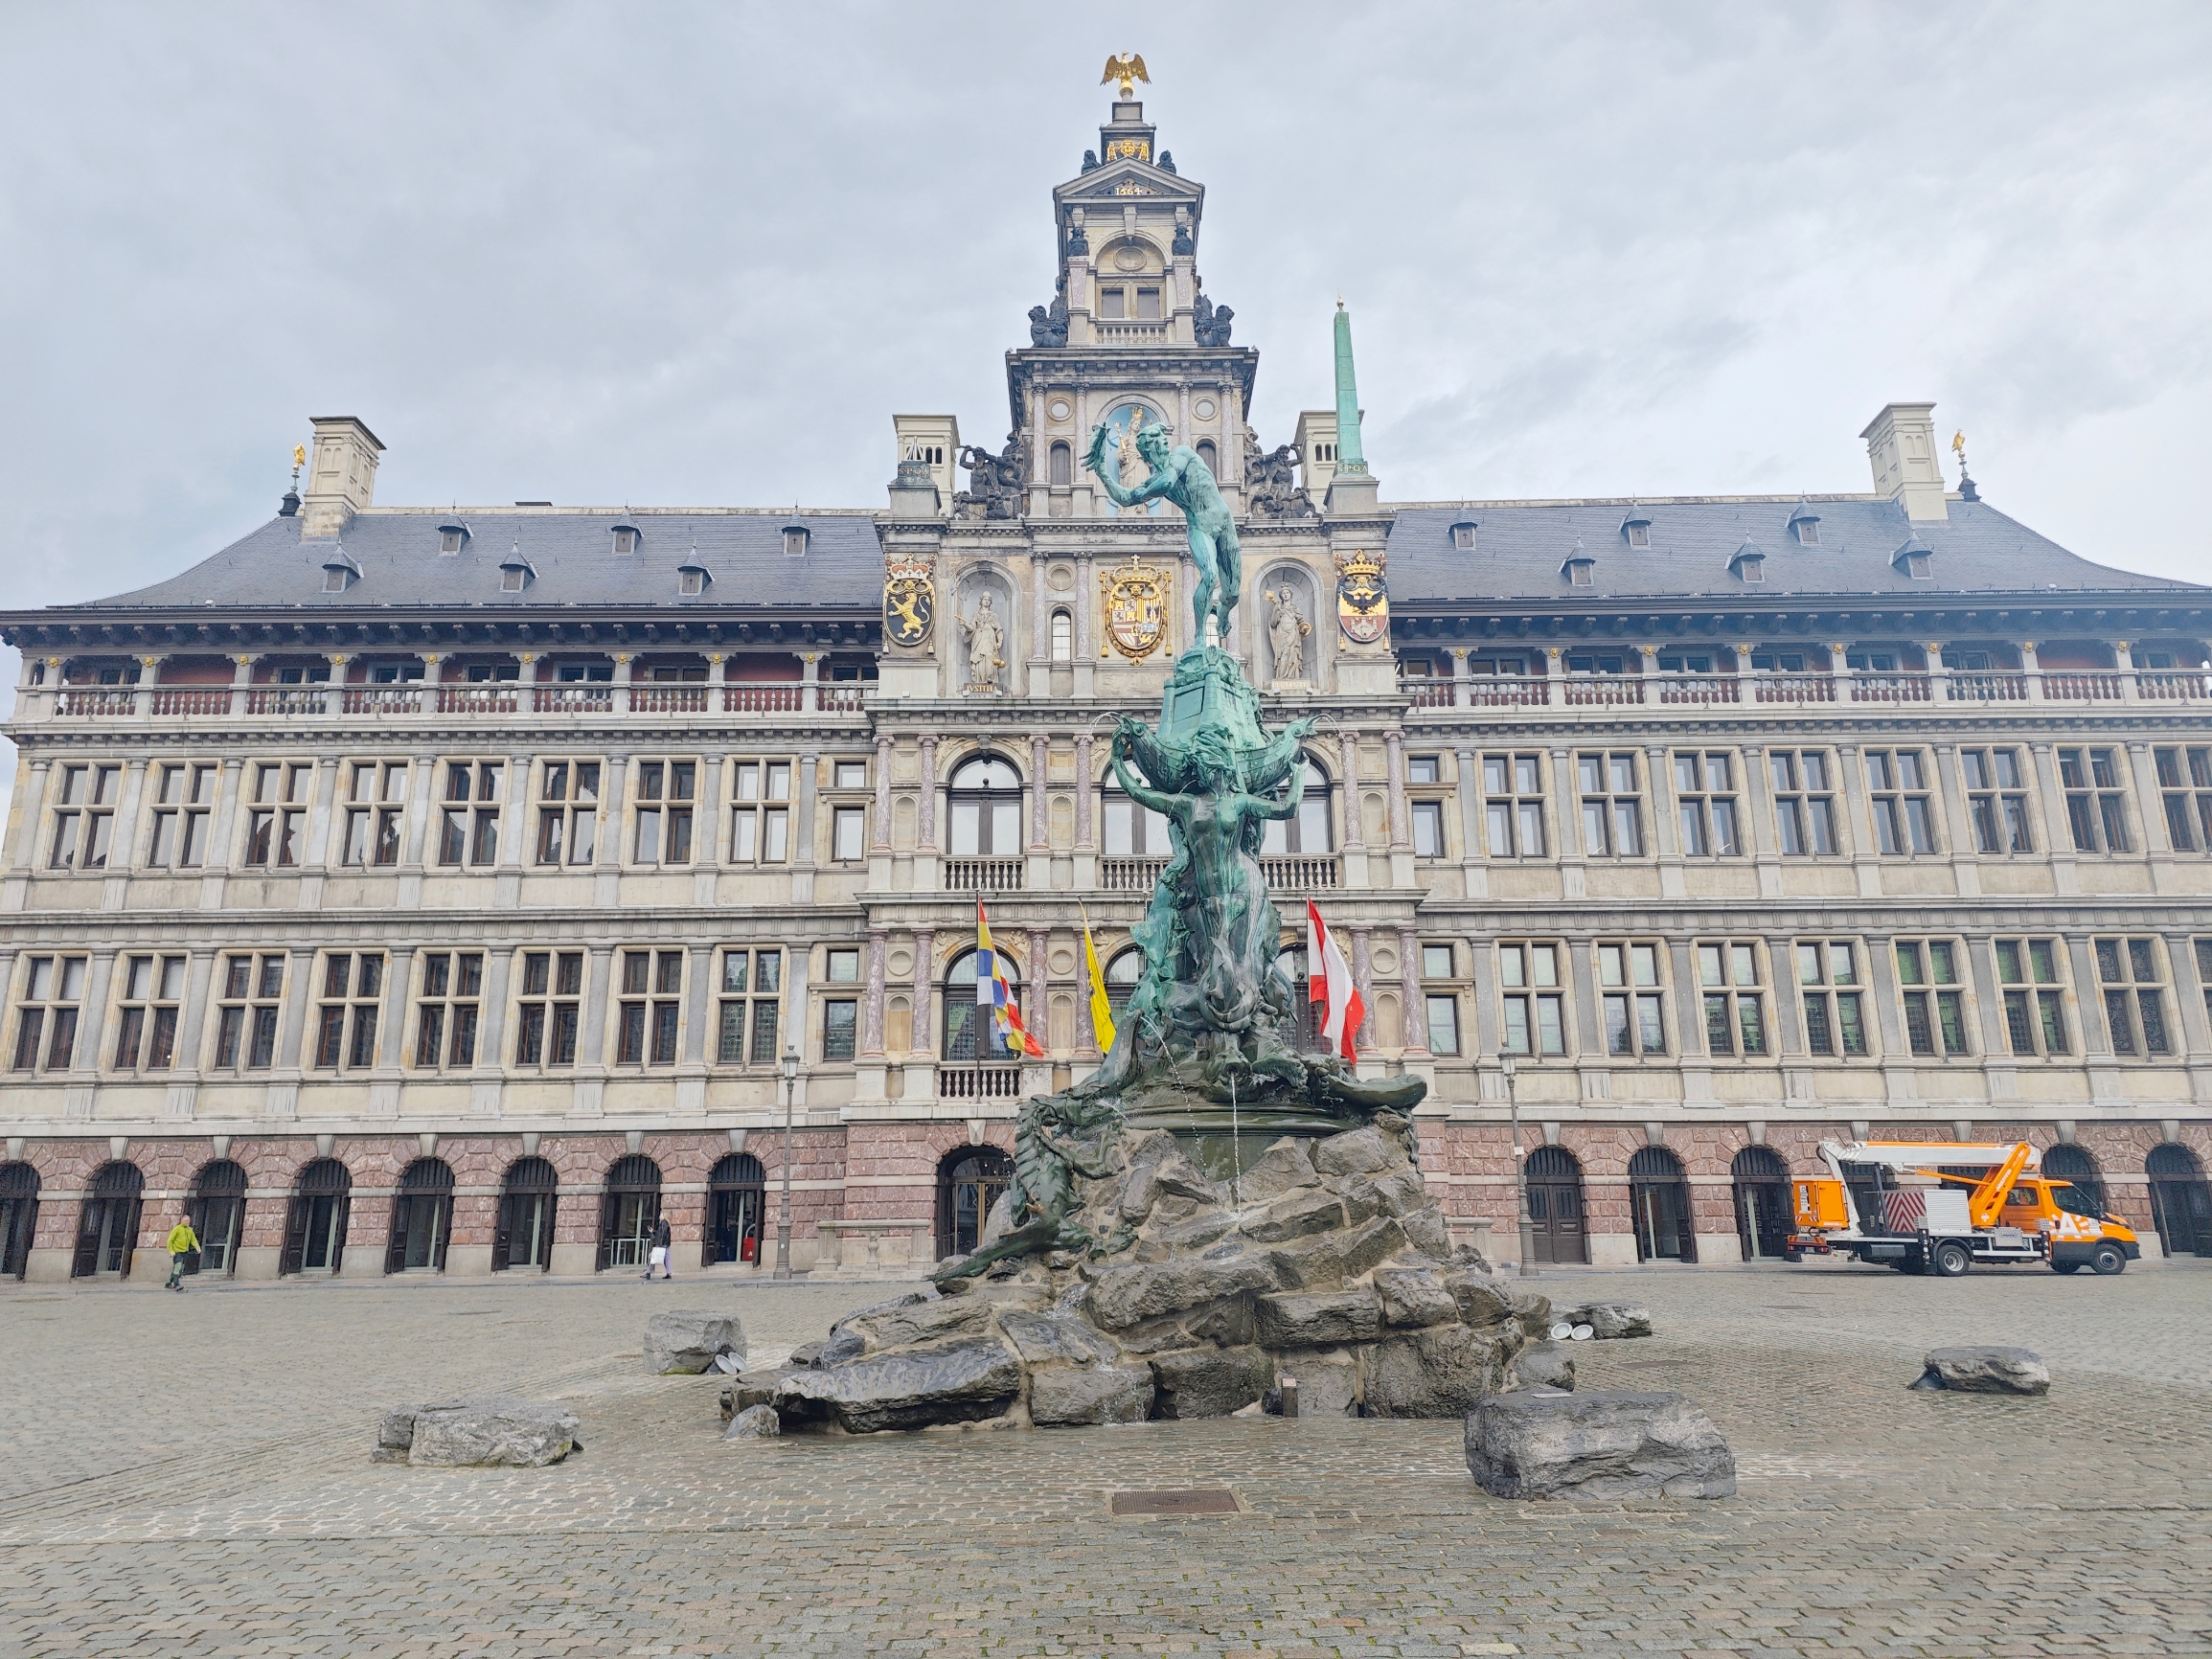 比利时第二大城市安特卫普，著名的布拉博喷泉位于安特卫普大广场市政厅前面，这个华丽大气的巴洛克式雕塑喷